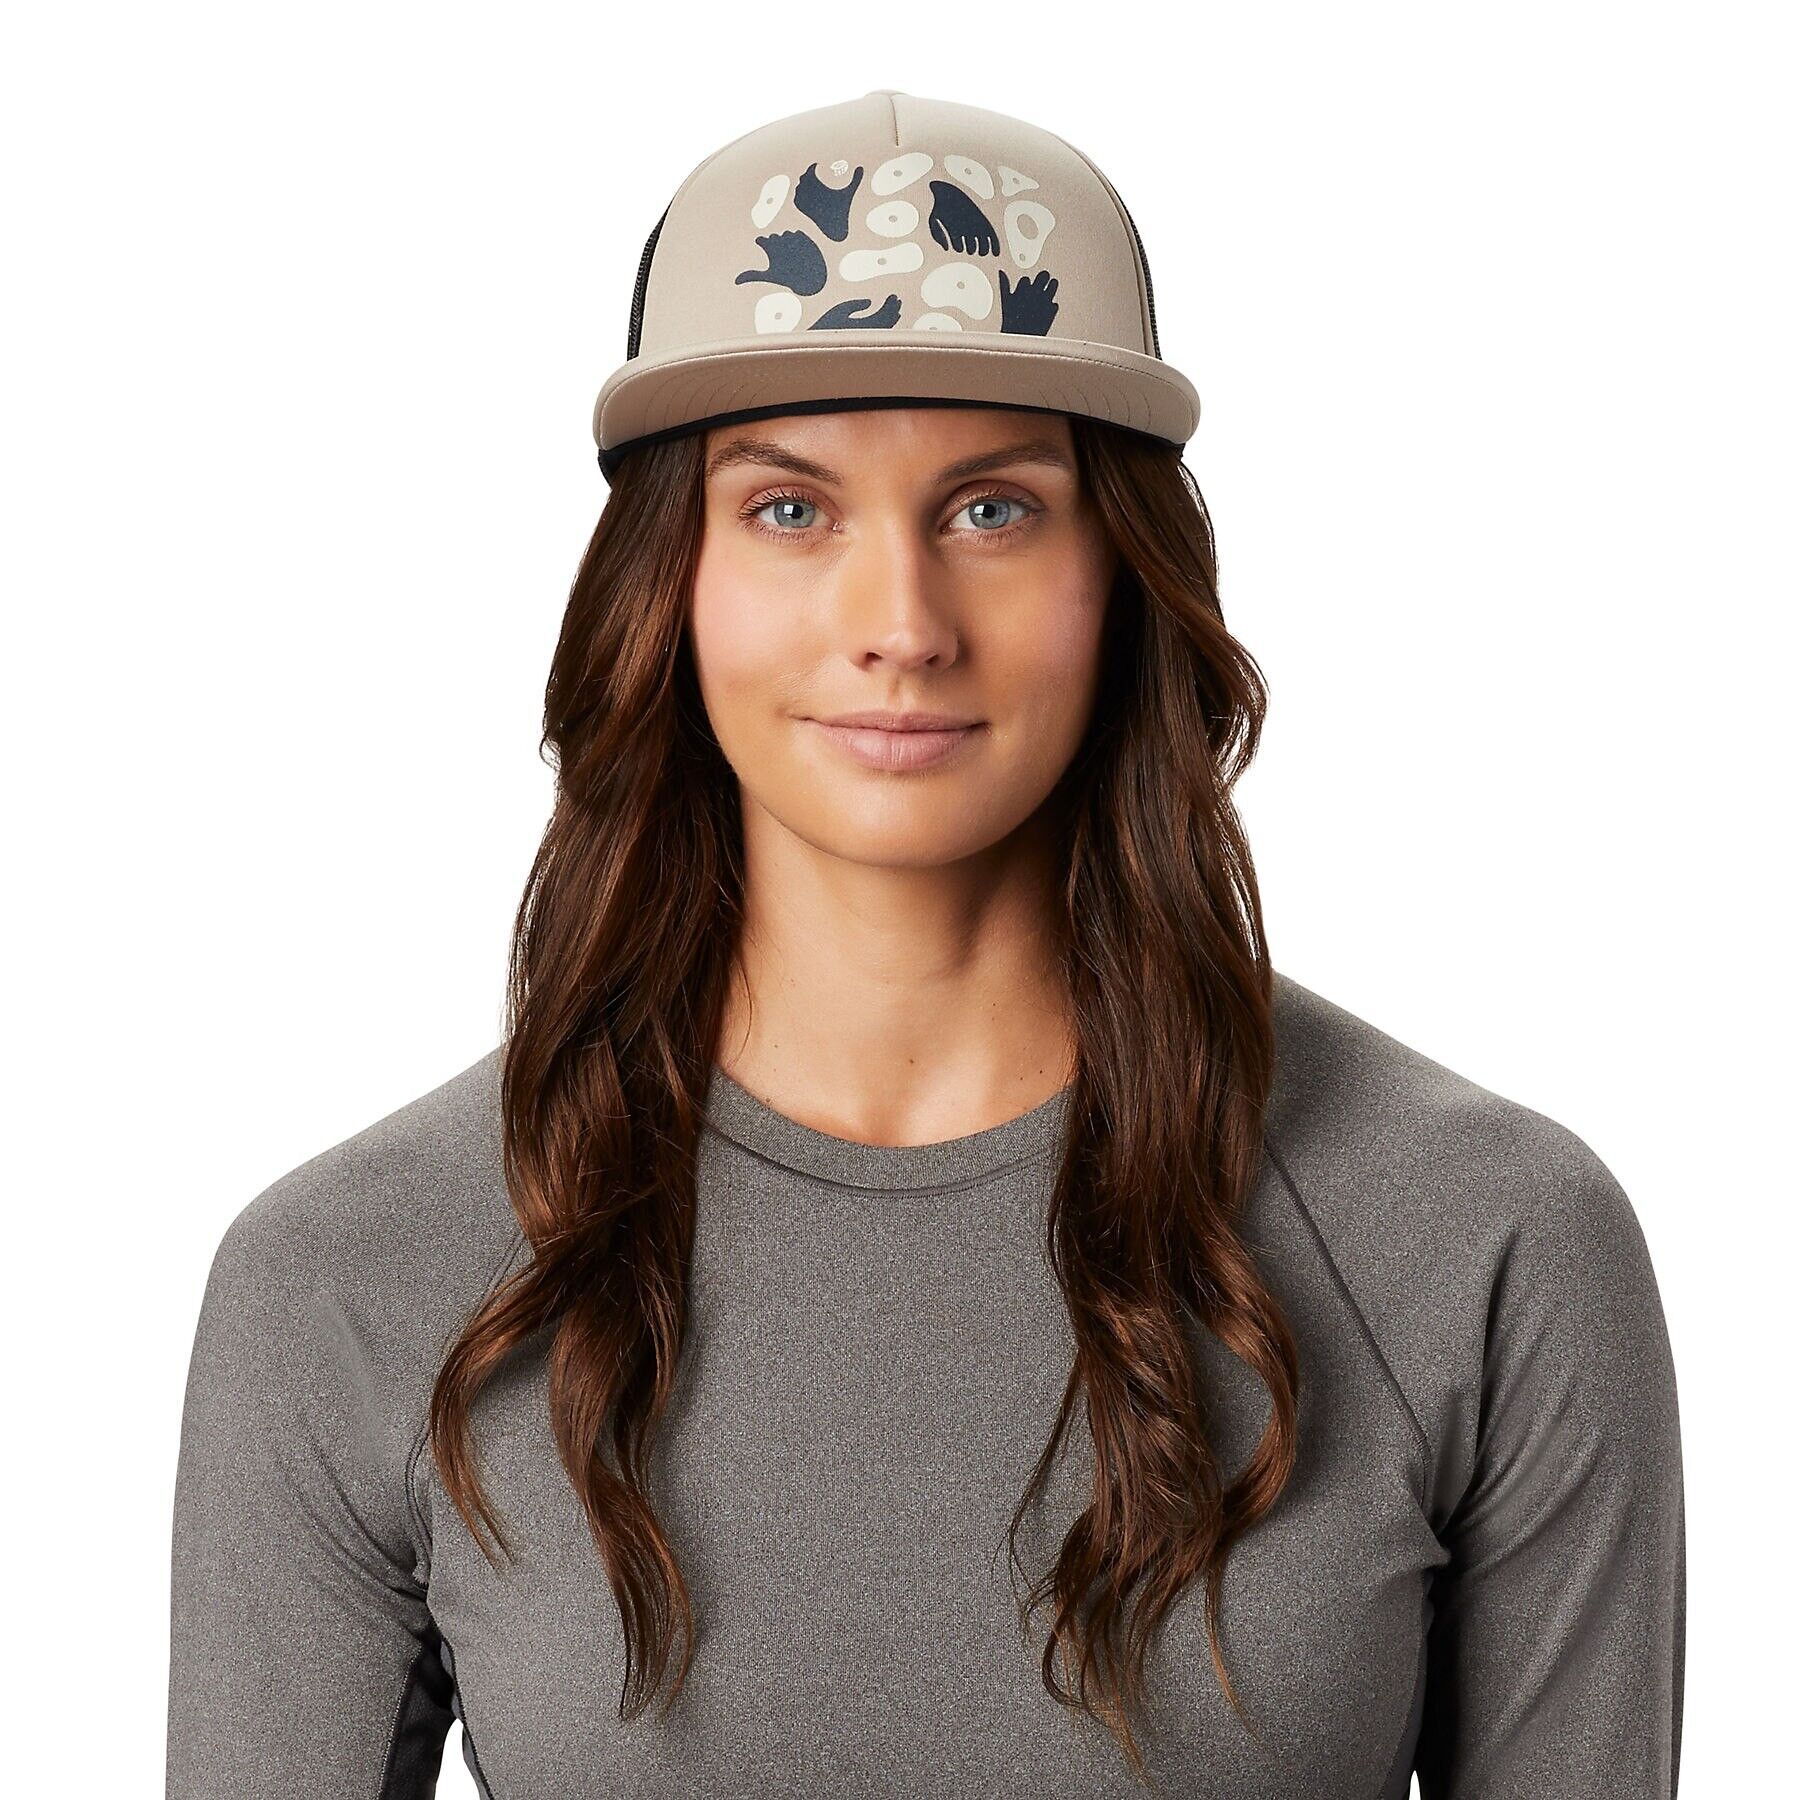 Mountain Hardwear Hand/Hold Trucker Hat - Cap - Women's